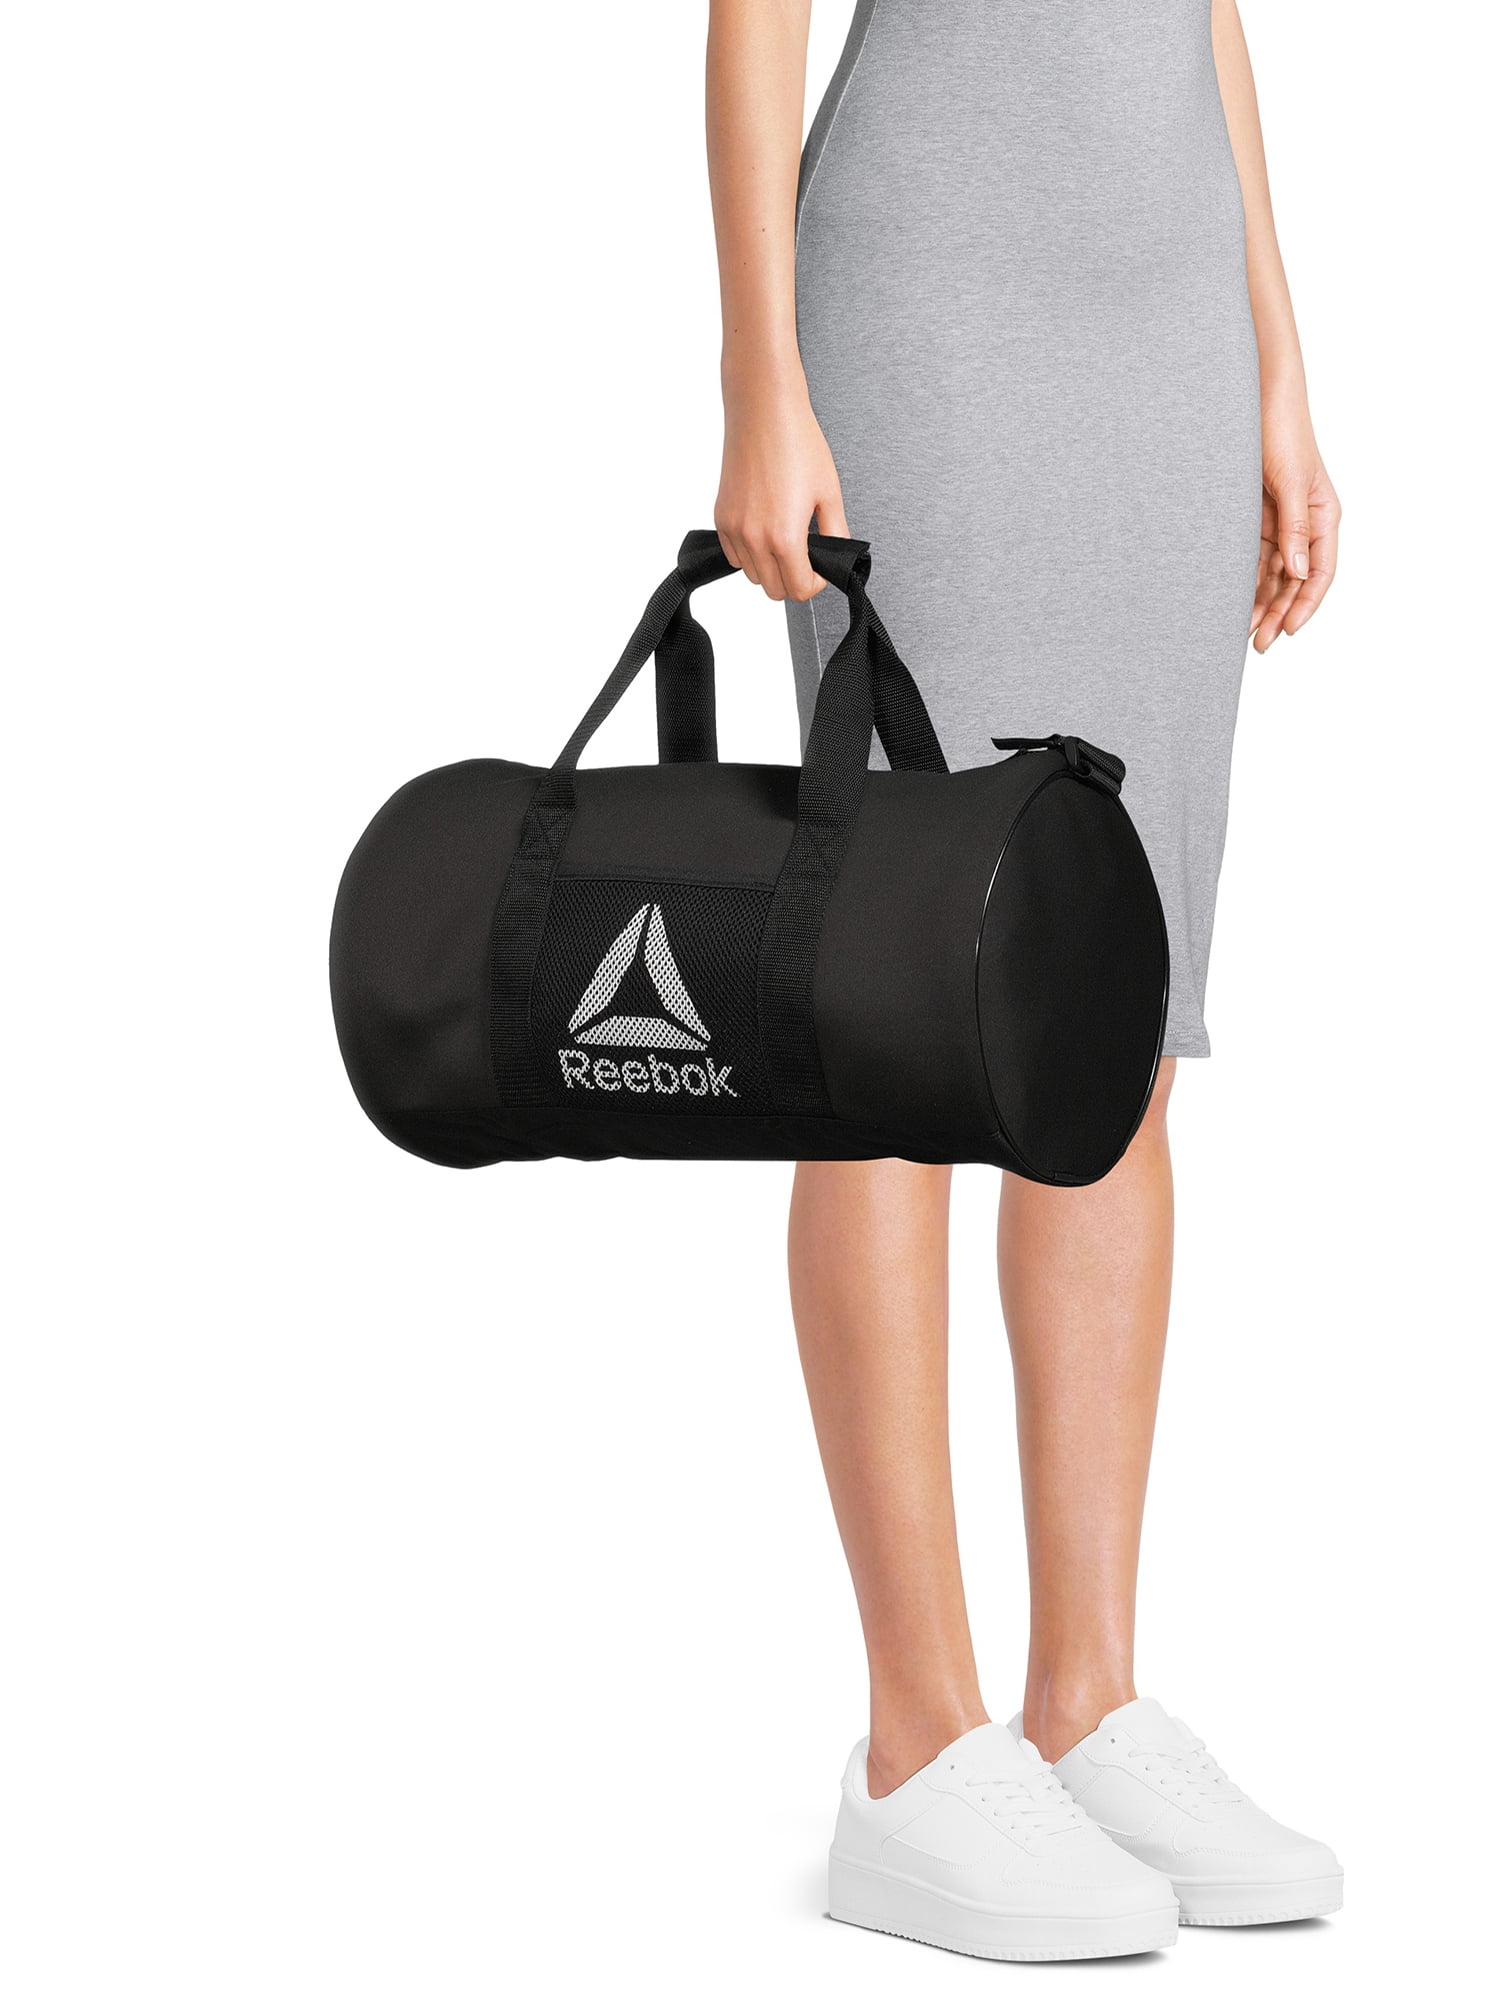 Reebok Duffel Handbag Bag with Shoulder Strap - Walmart.com